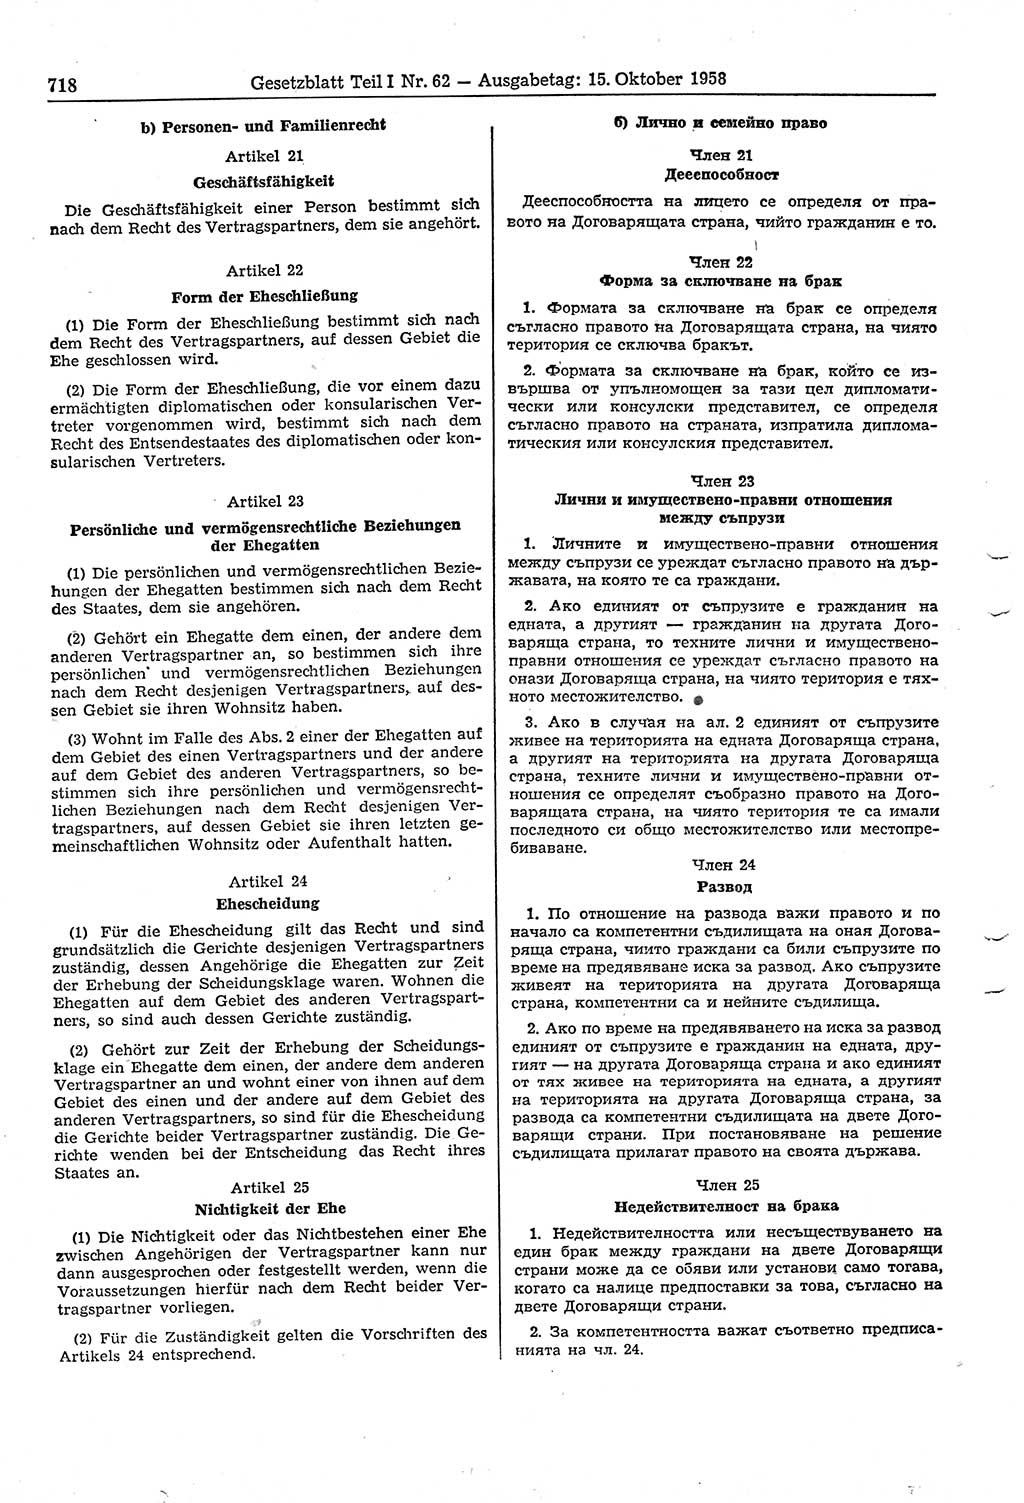 Gesetzblatt (GBl.) der Deutschen Demokratischen Republik (DDR) Teil Ⅰ 1958, Seite 718 (GBl. DDR Ⅰ 1958, S. 718)